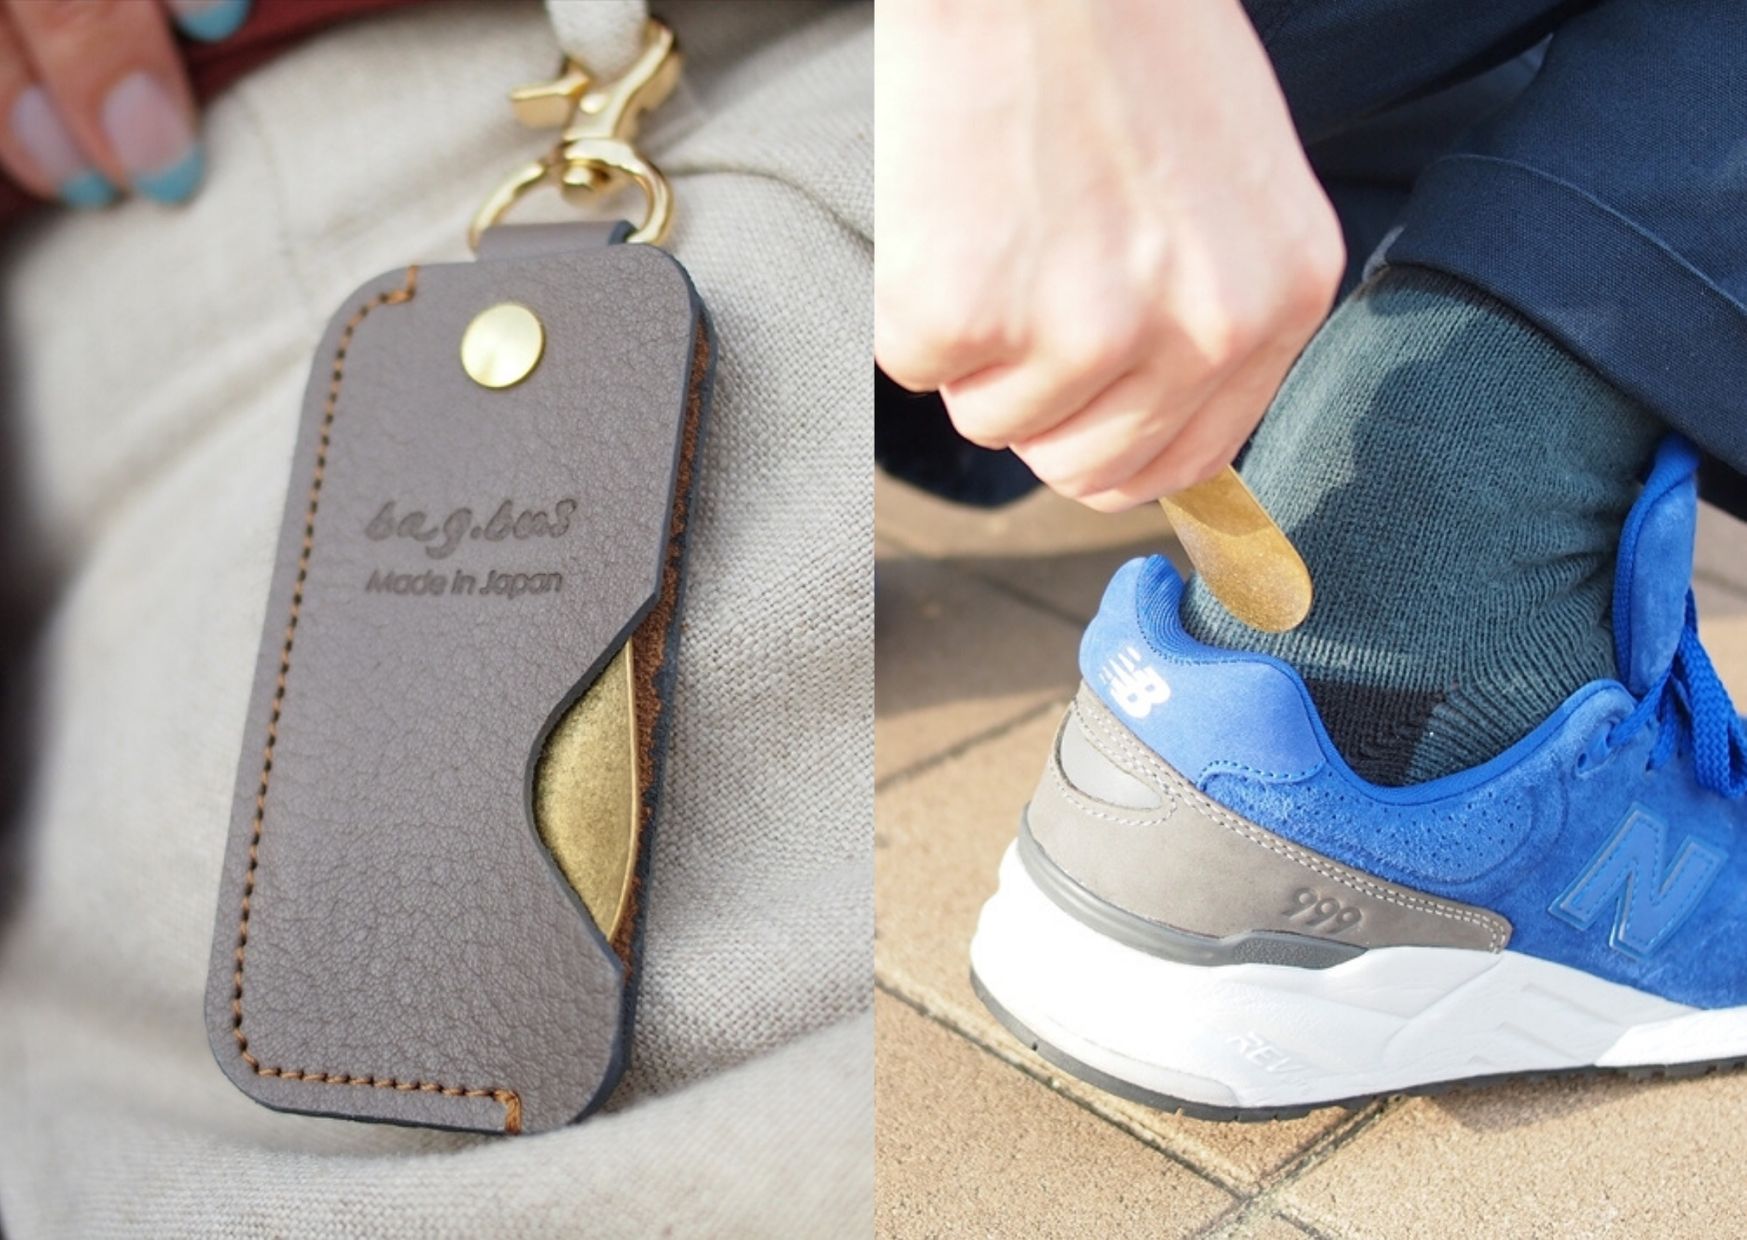 真鍮とレザーを使ったおしゃれな携帯用靴べらキーホルダー | bag.bus111blog